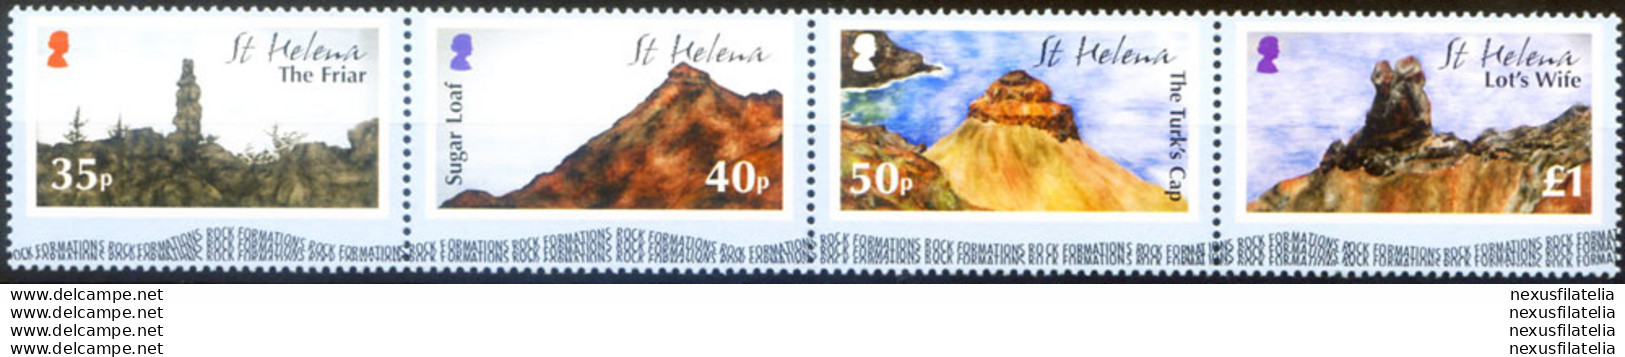 Formazioni Rocciose 2005. - Saint Helena Island